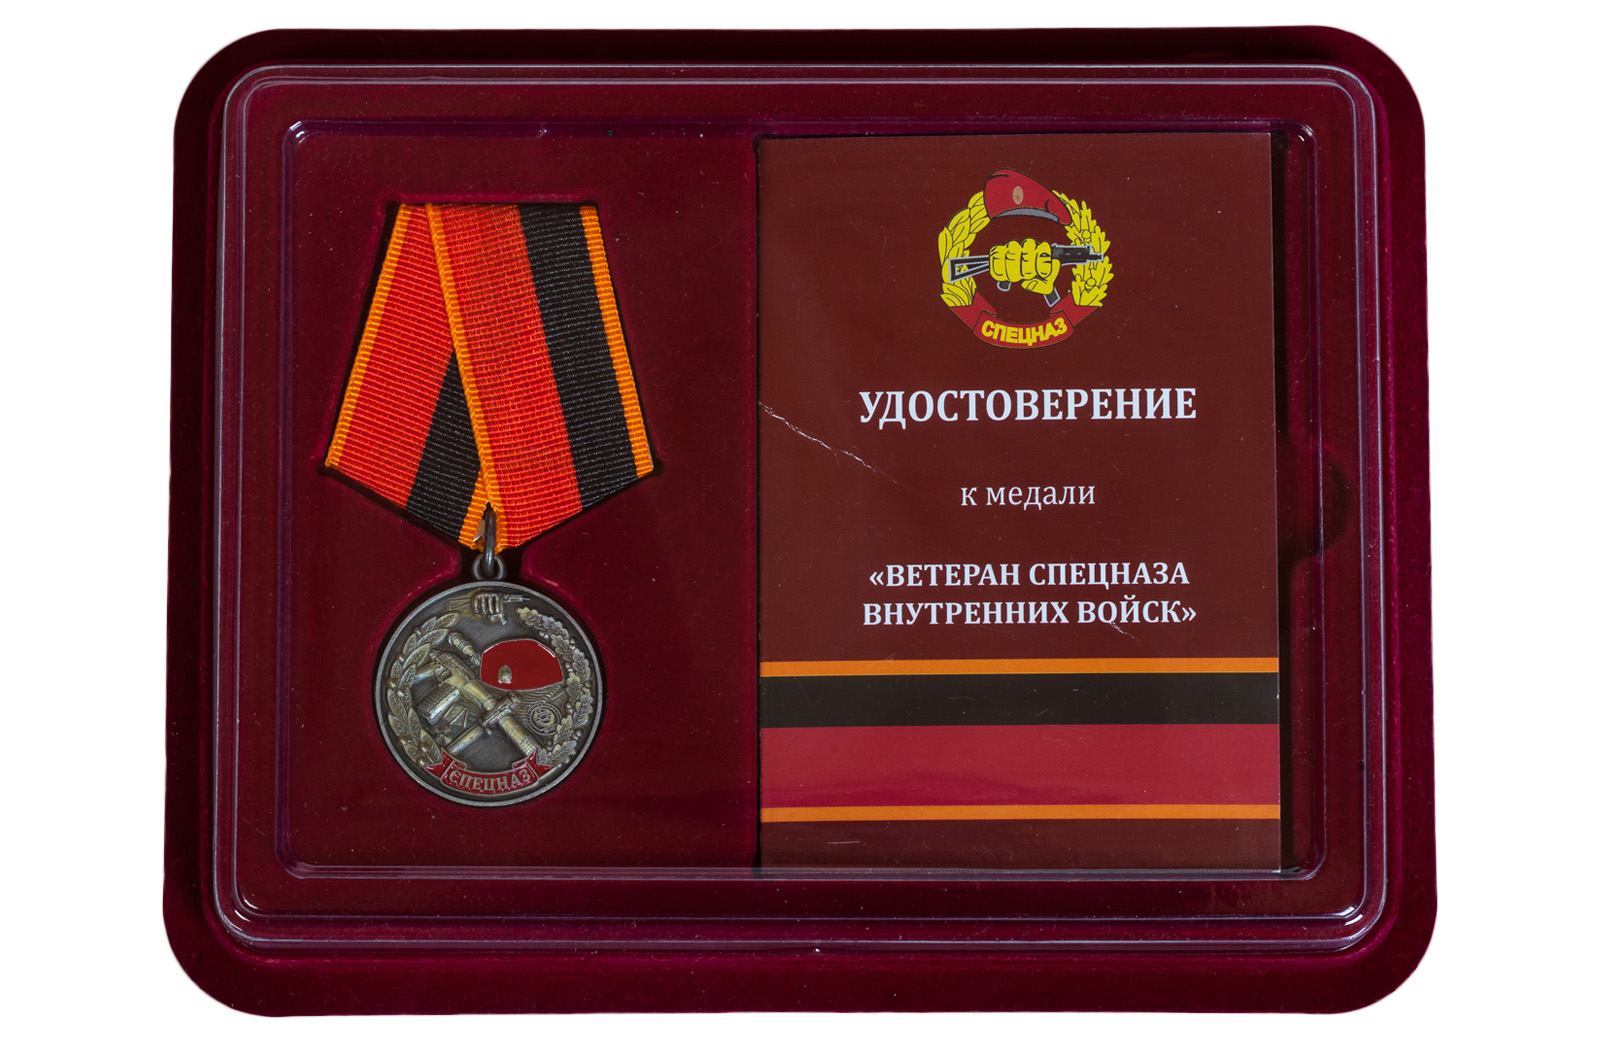 Купить медаль Ветеран спецназа ВВ оптом или в розницу